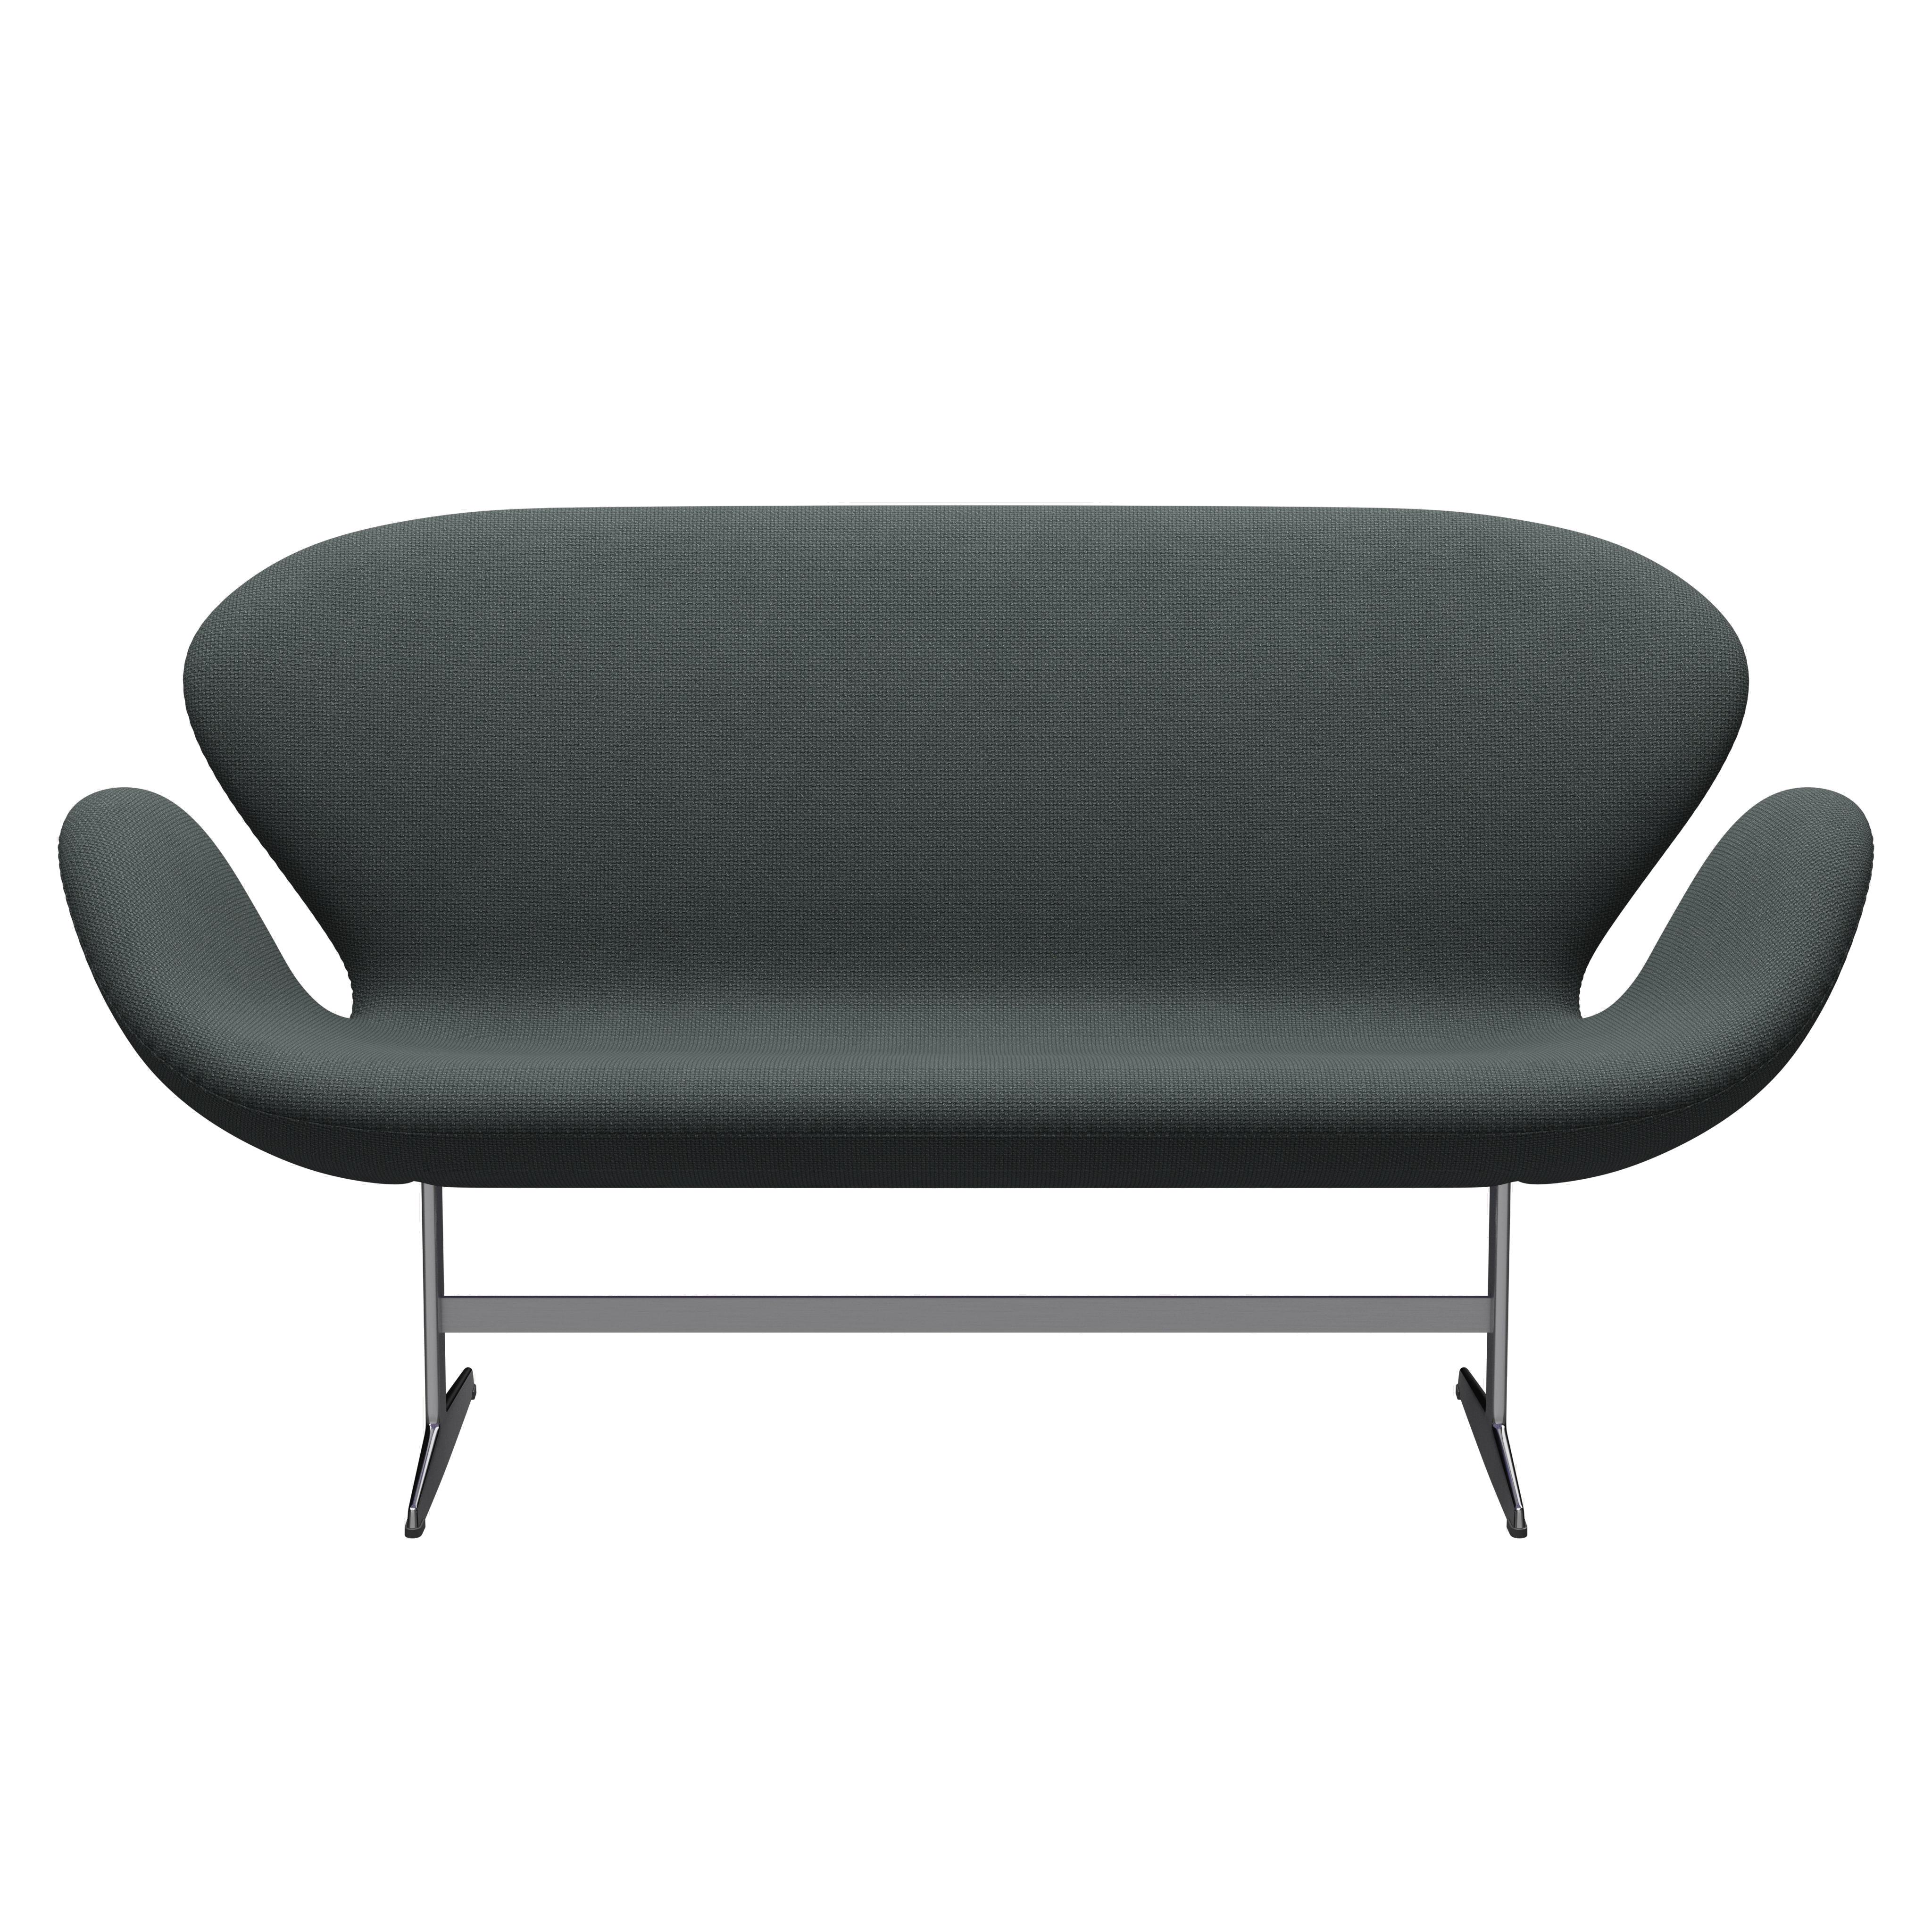 Arne Jacobsen 'Swan' Sofa for Fritz Hansen in Fabric Upholstery (Cat. 1) For Sale 1